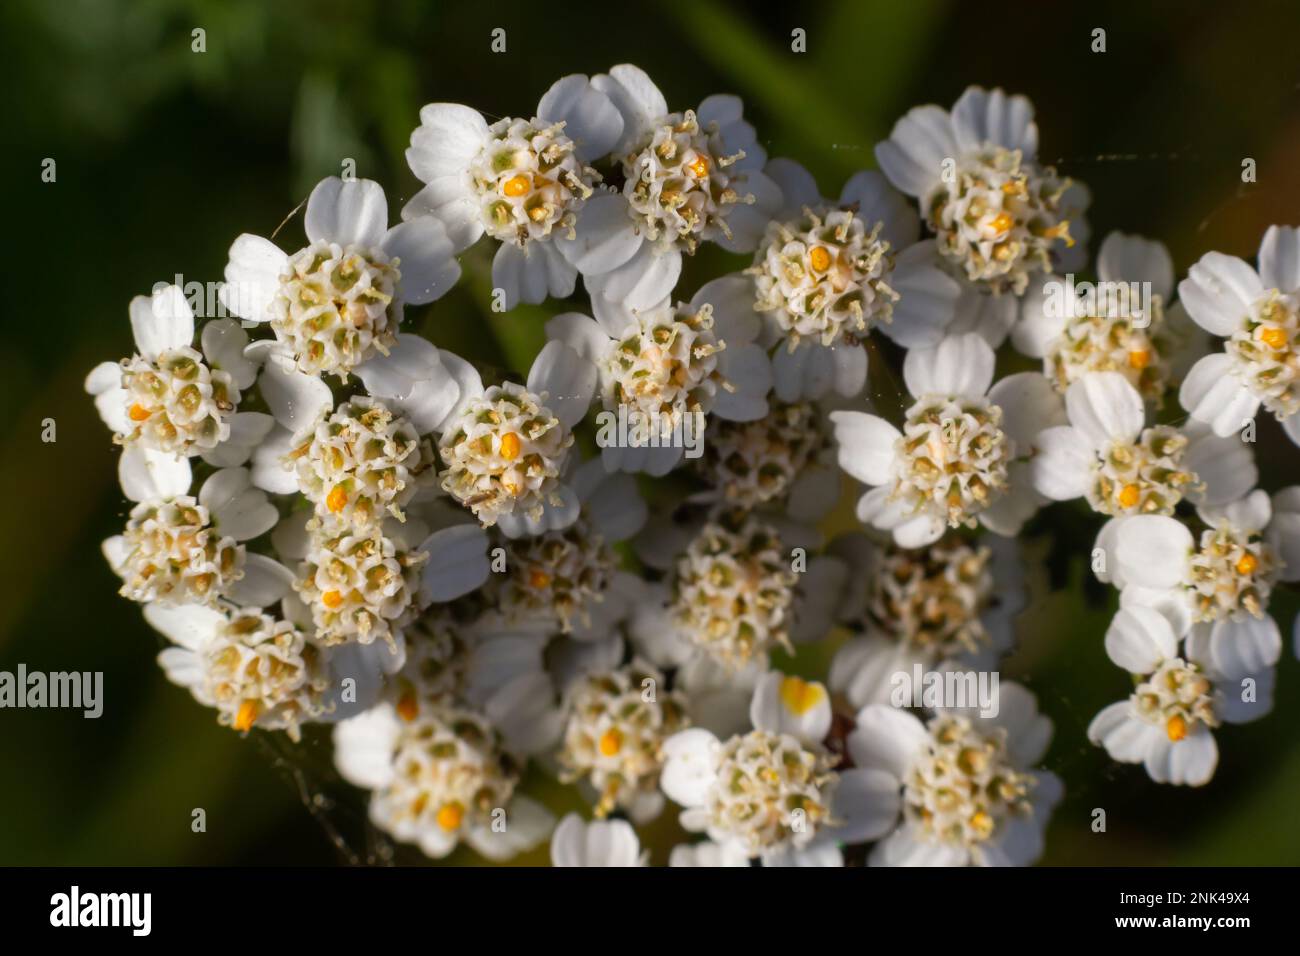 Seepfeil Achillea millefolium Weiße Blüten Nahaufnahme Draufsicht auf grünem, verschwommenem Gras Blumenhintergrund, selektiver Fokus. Medizinisches Wildkraut Yarr Stockfoto